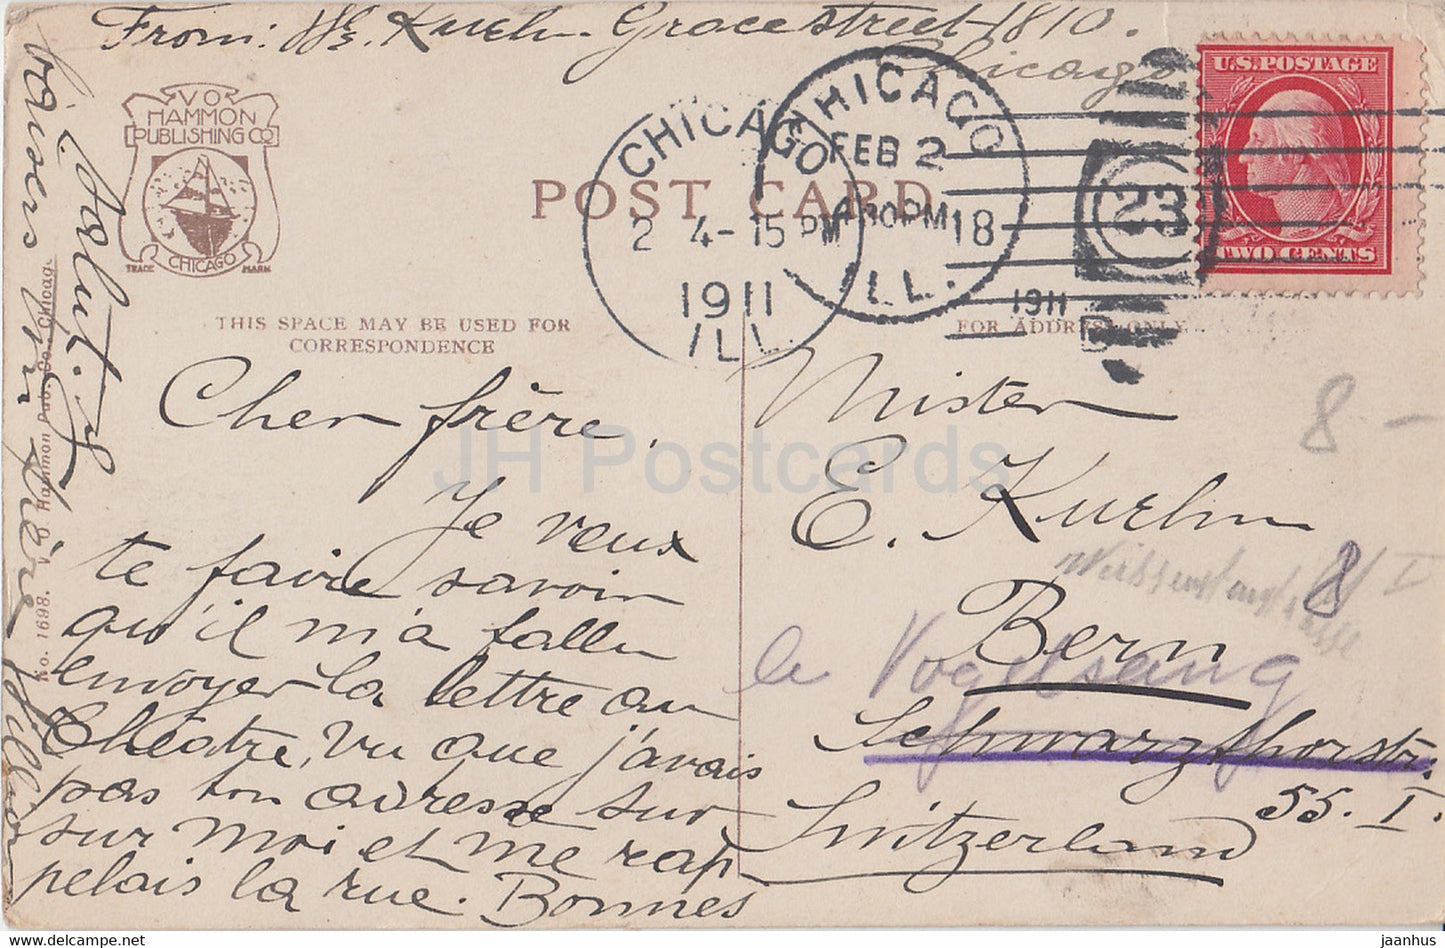 Chicago – Noon Hour on State Street – Illinois – Straßenbahn – Auto – 1698 – alte Postkarte – 1911 – Vereinigte Staaten USA – gebraucht